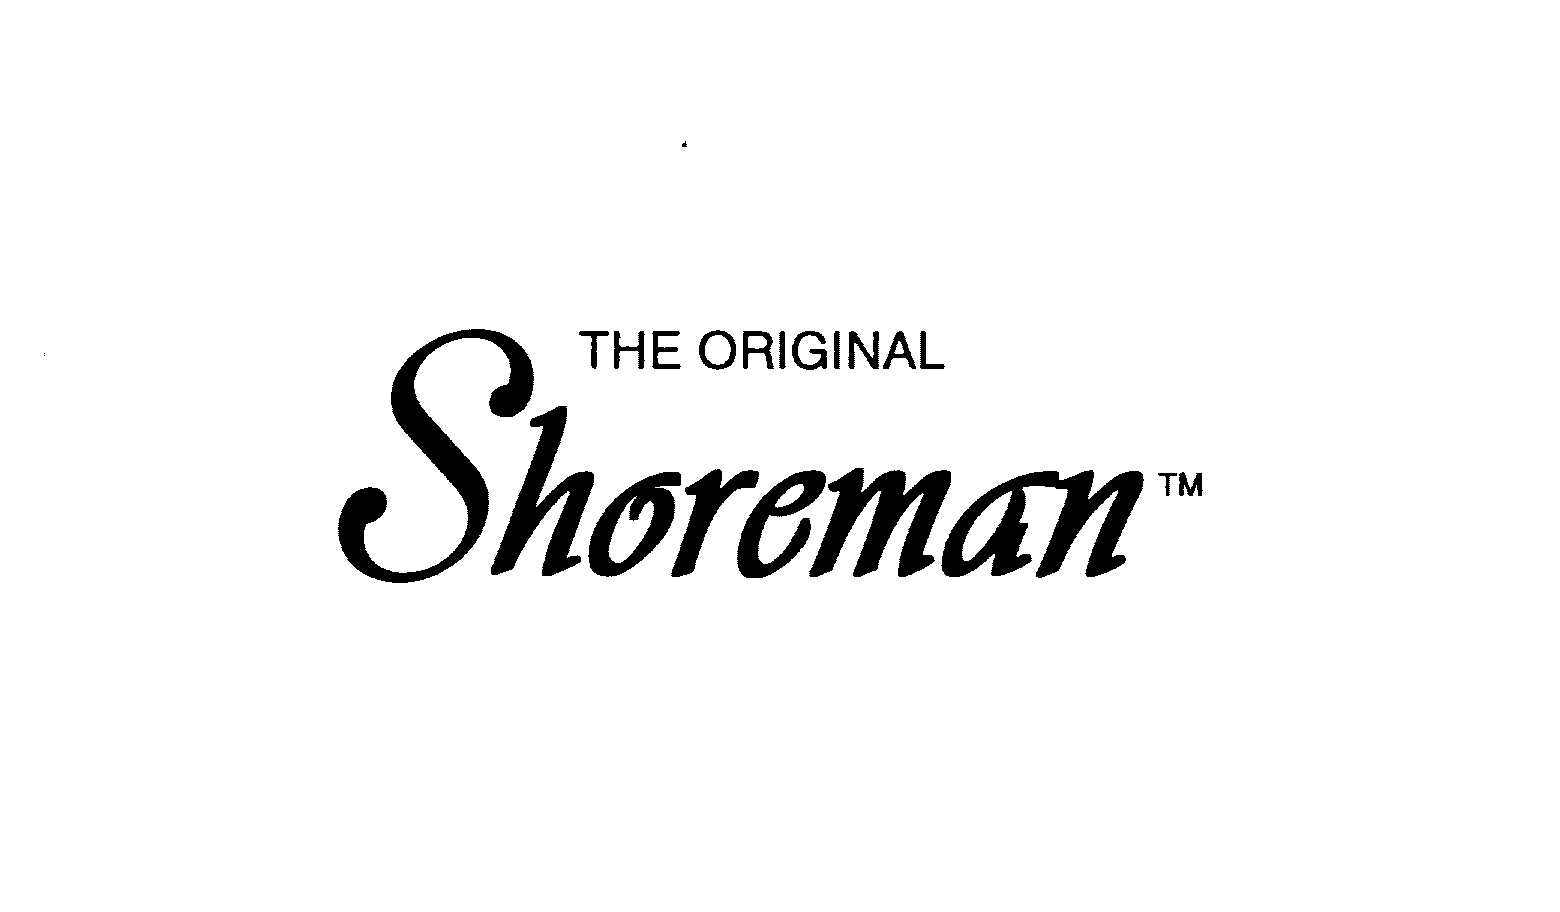  THE ORIGINAL SHOREMAN